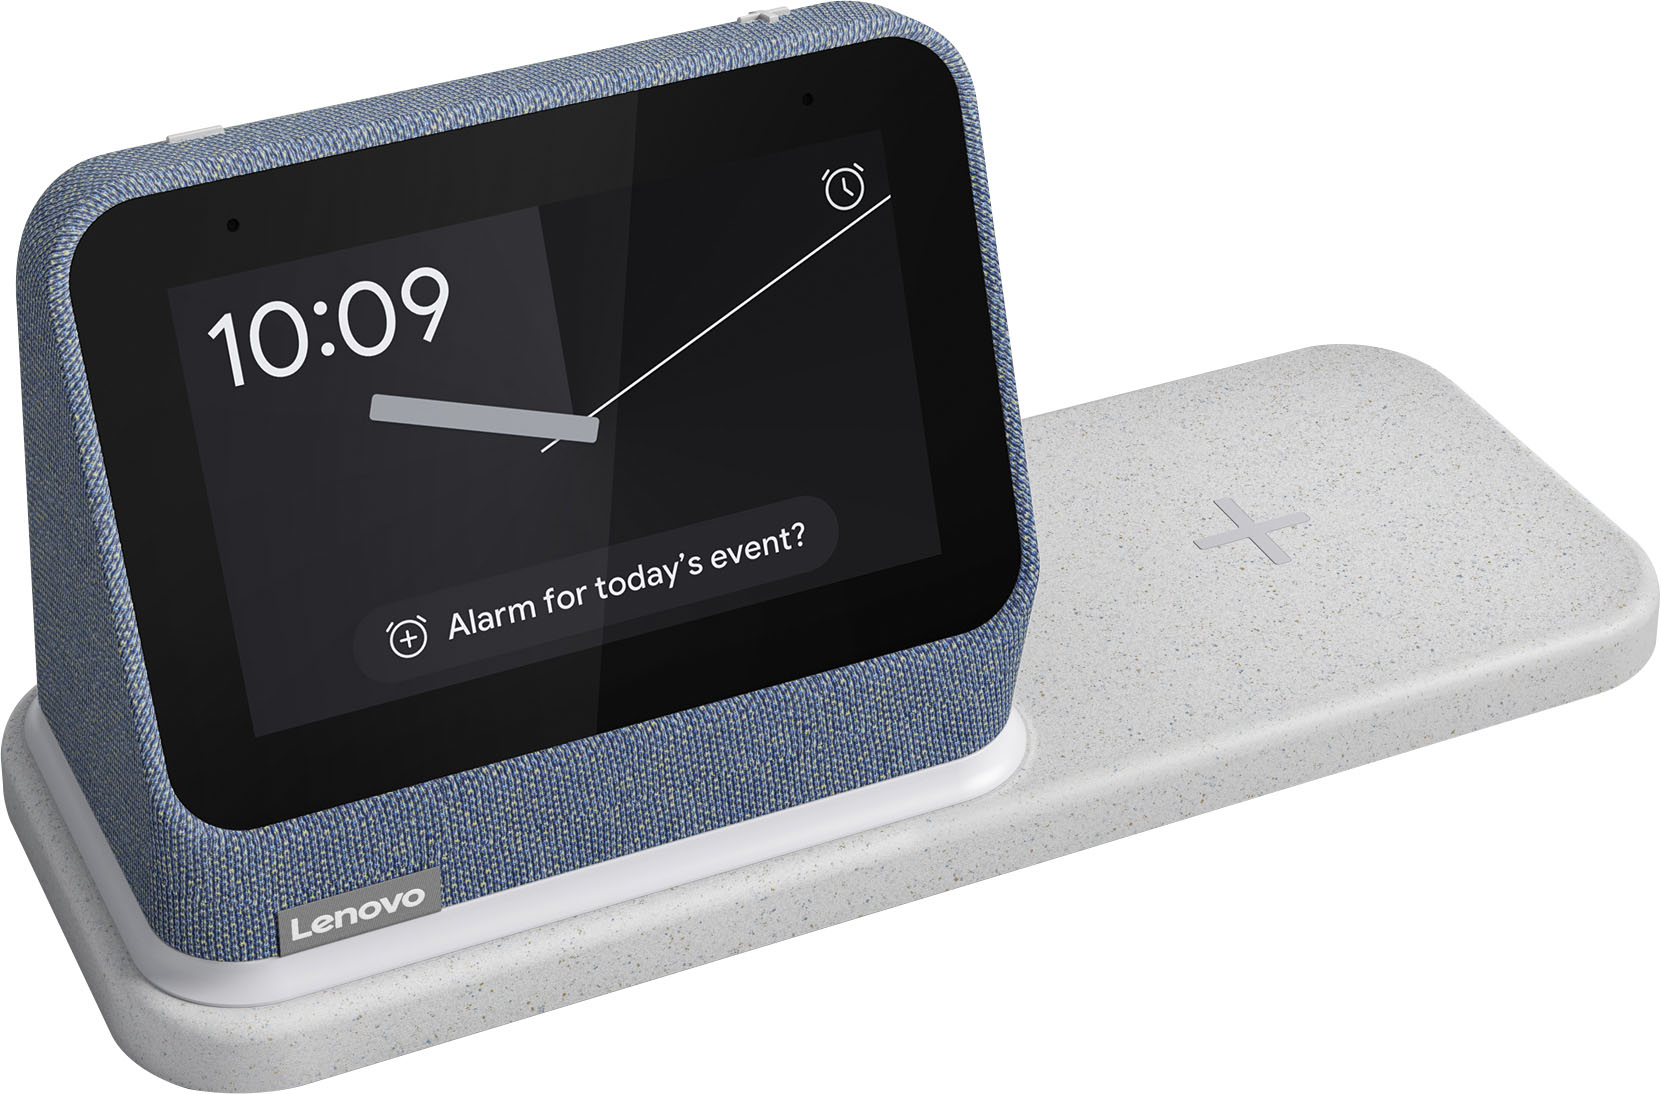 Reloj Despertador Inteligente Lenovo Smart Clock Google Assistance